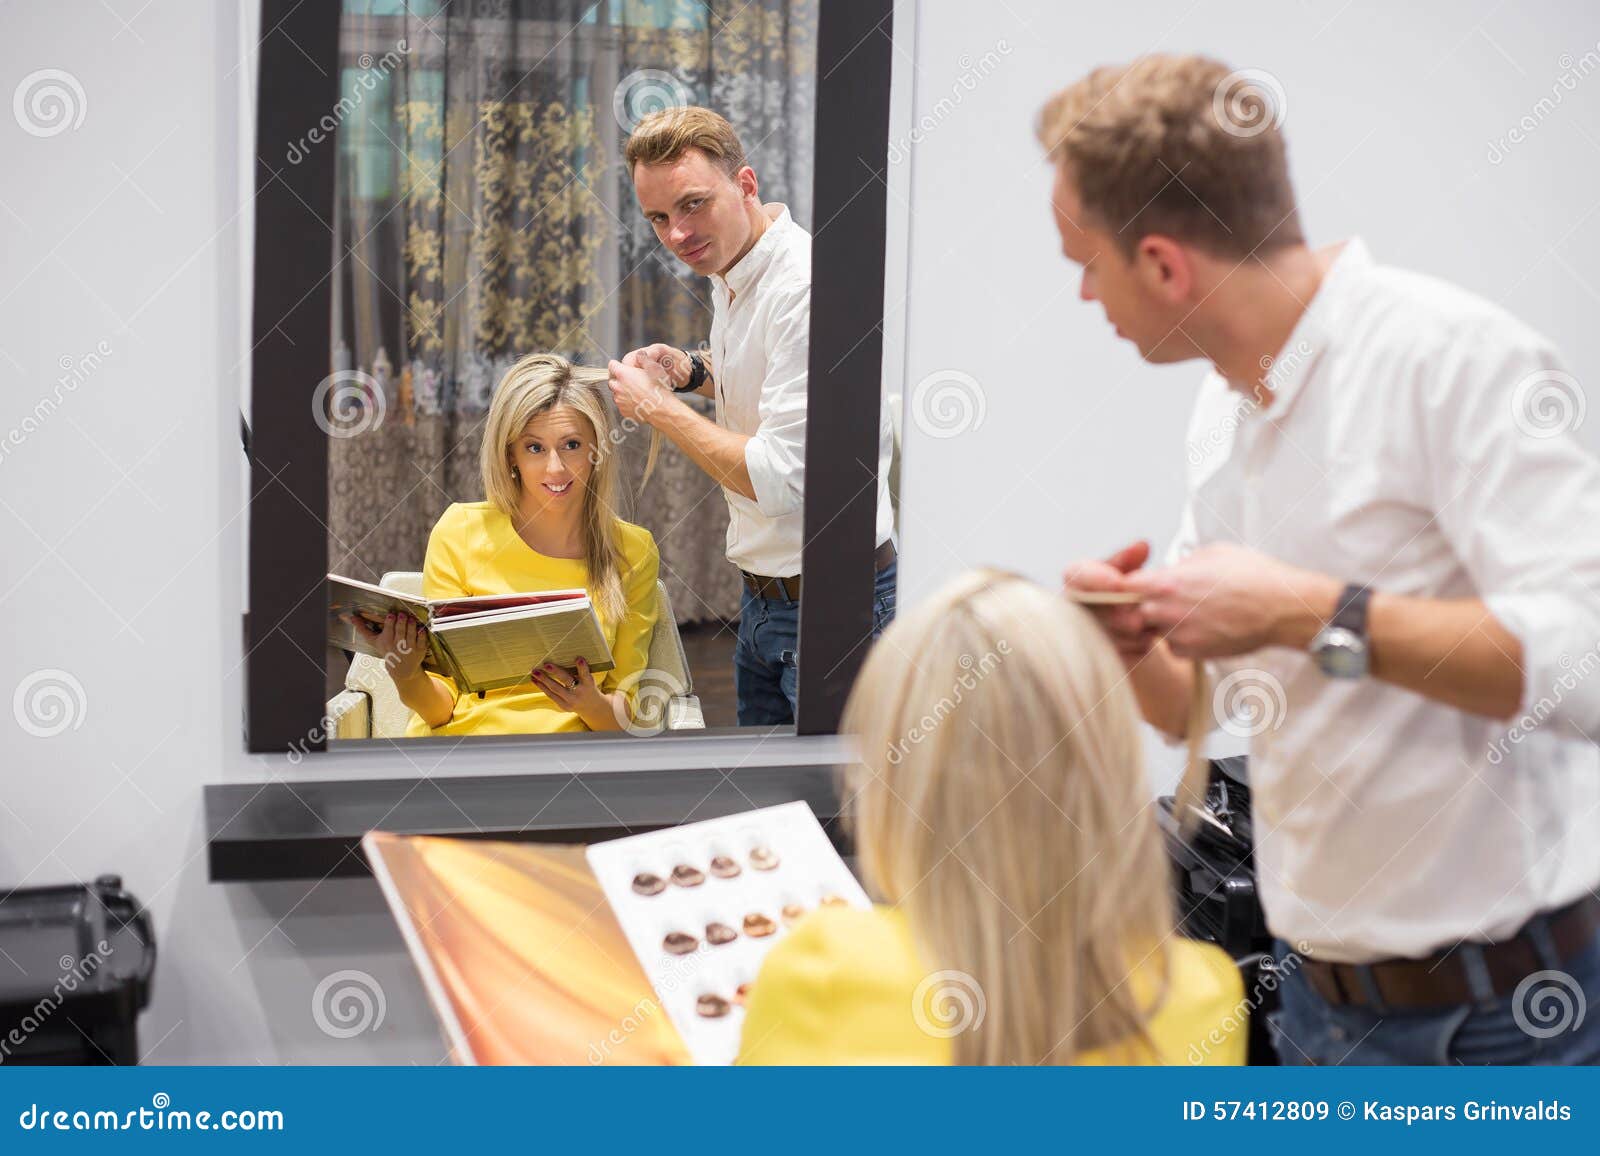 Blonde Hair Salon - wide 4